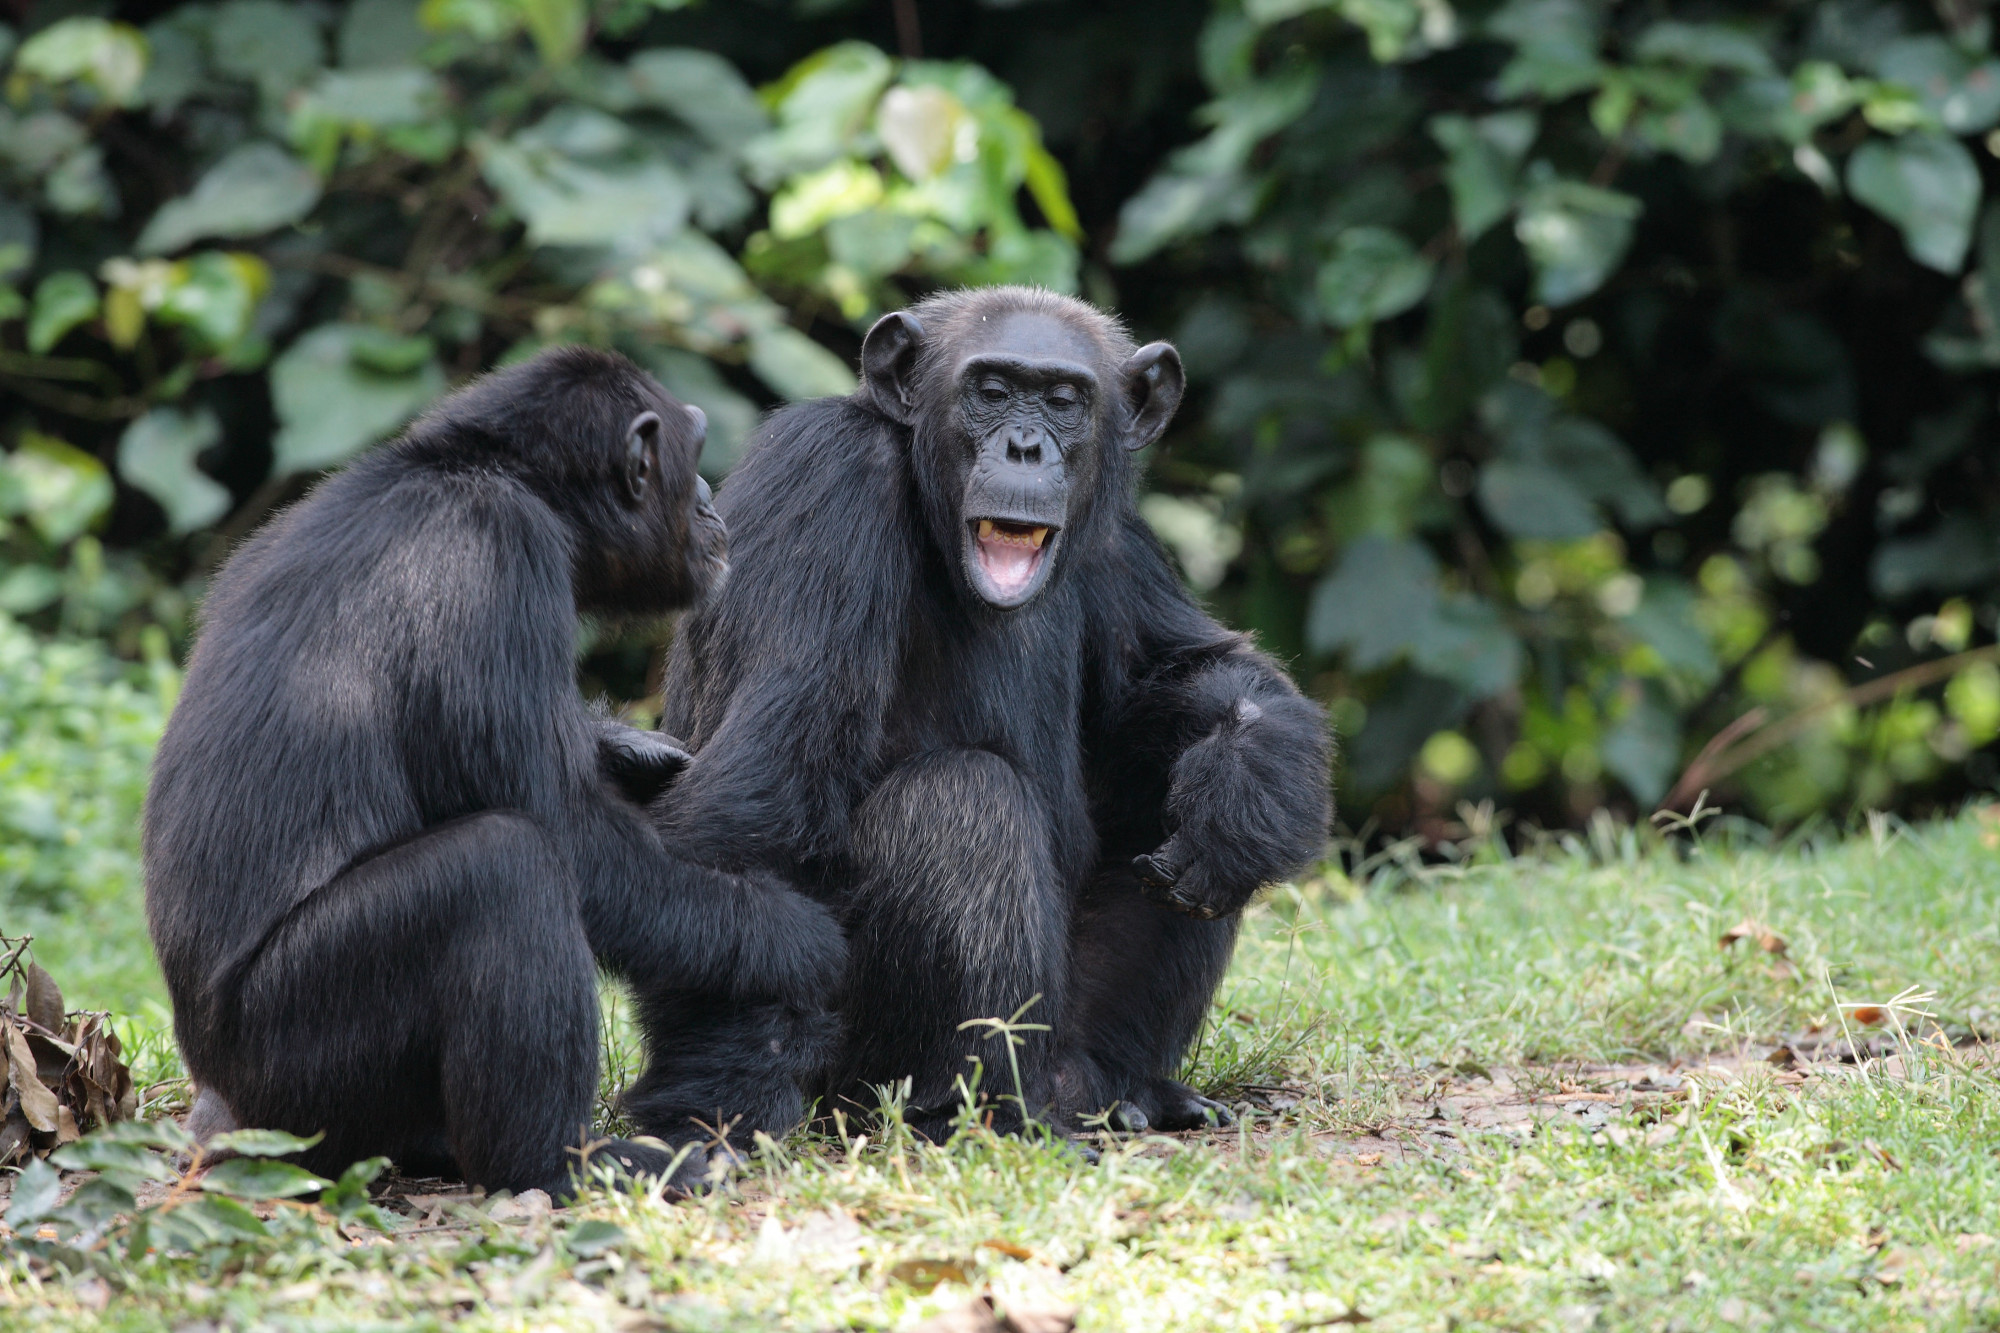 A csimpánzok az emberekhez hasonló hosszú életet élnek a menopauza után